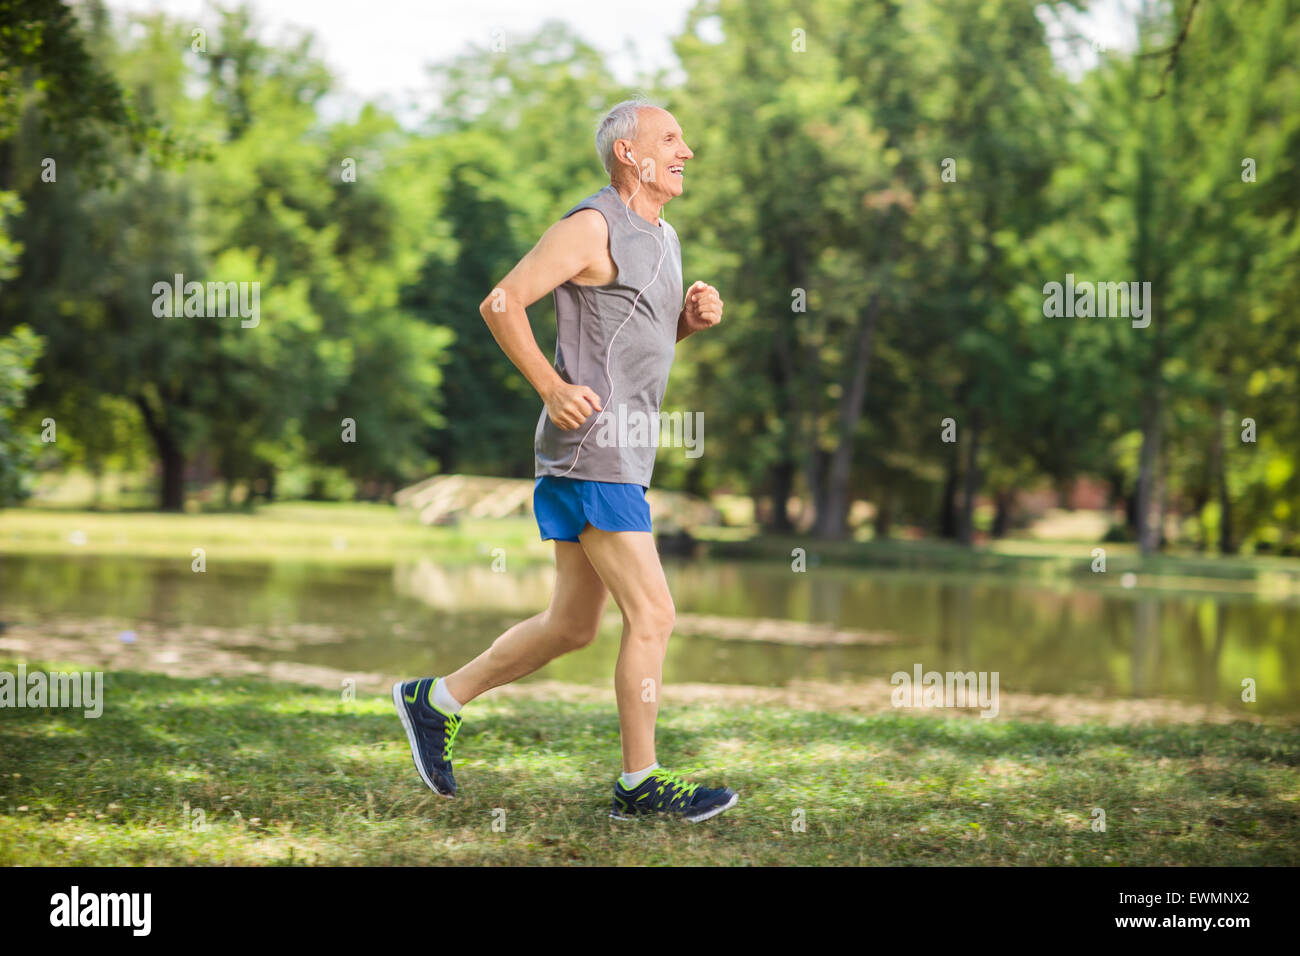 Hombre maduro atlético en jogging de ropa deportiva en el parque